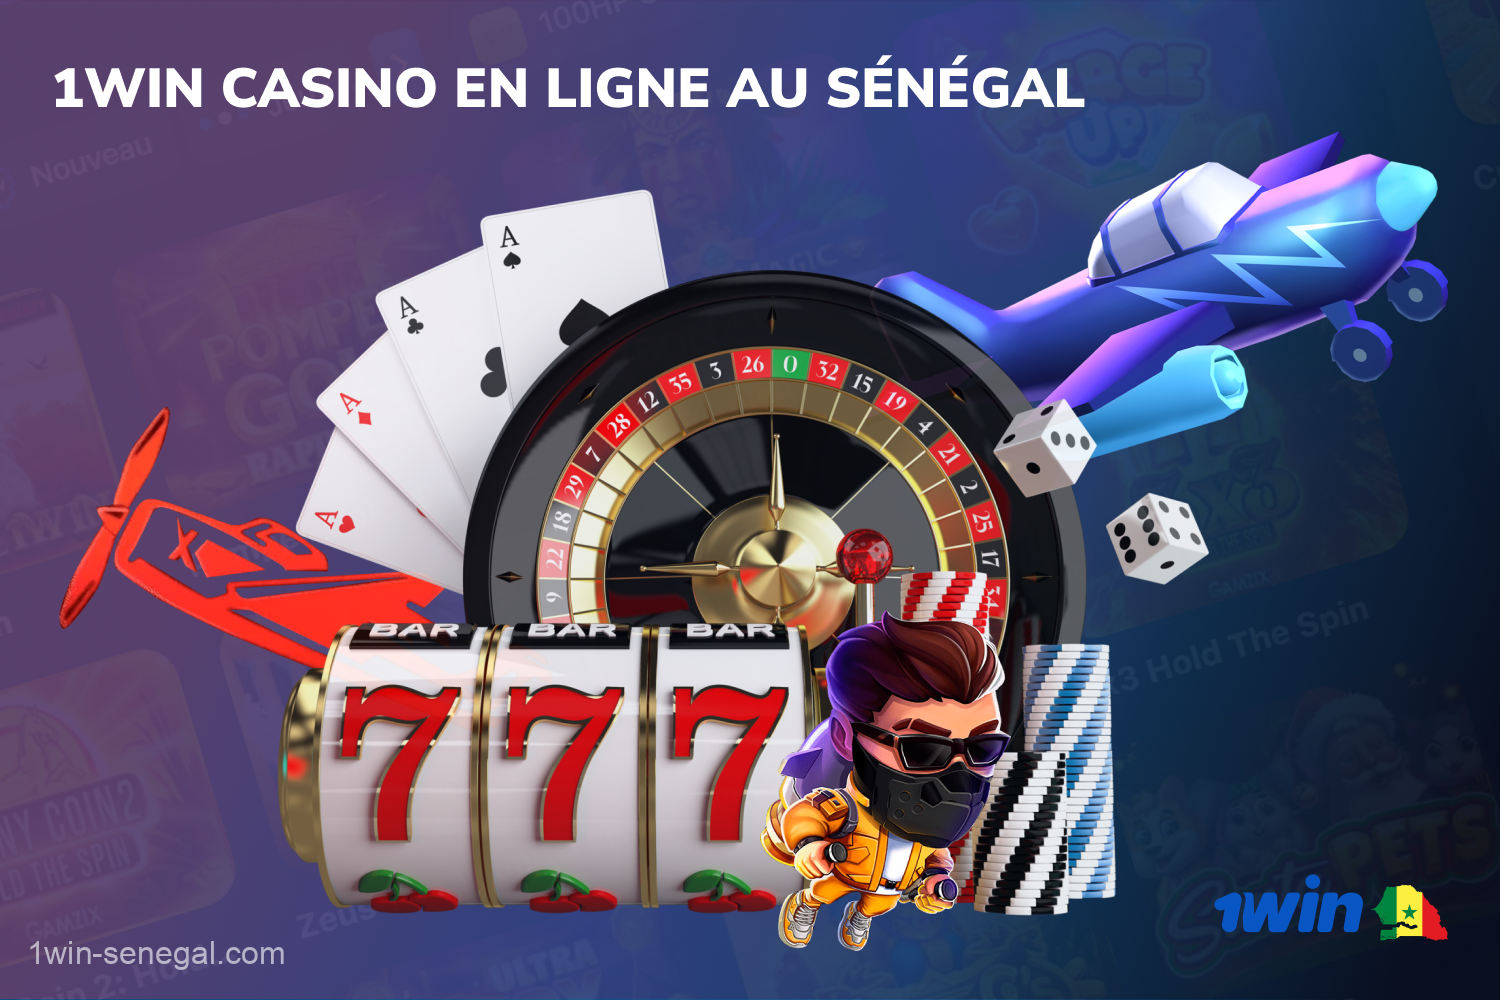 Plus de 10 000 jeux d'argent attendent les utilisateurs sénégalais sur le site et l'application mobile du casino 1win